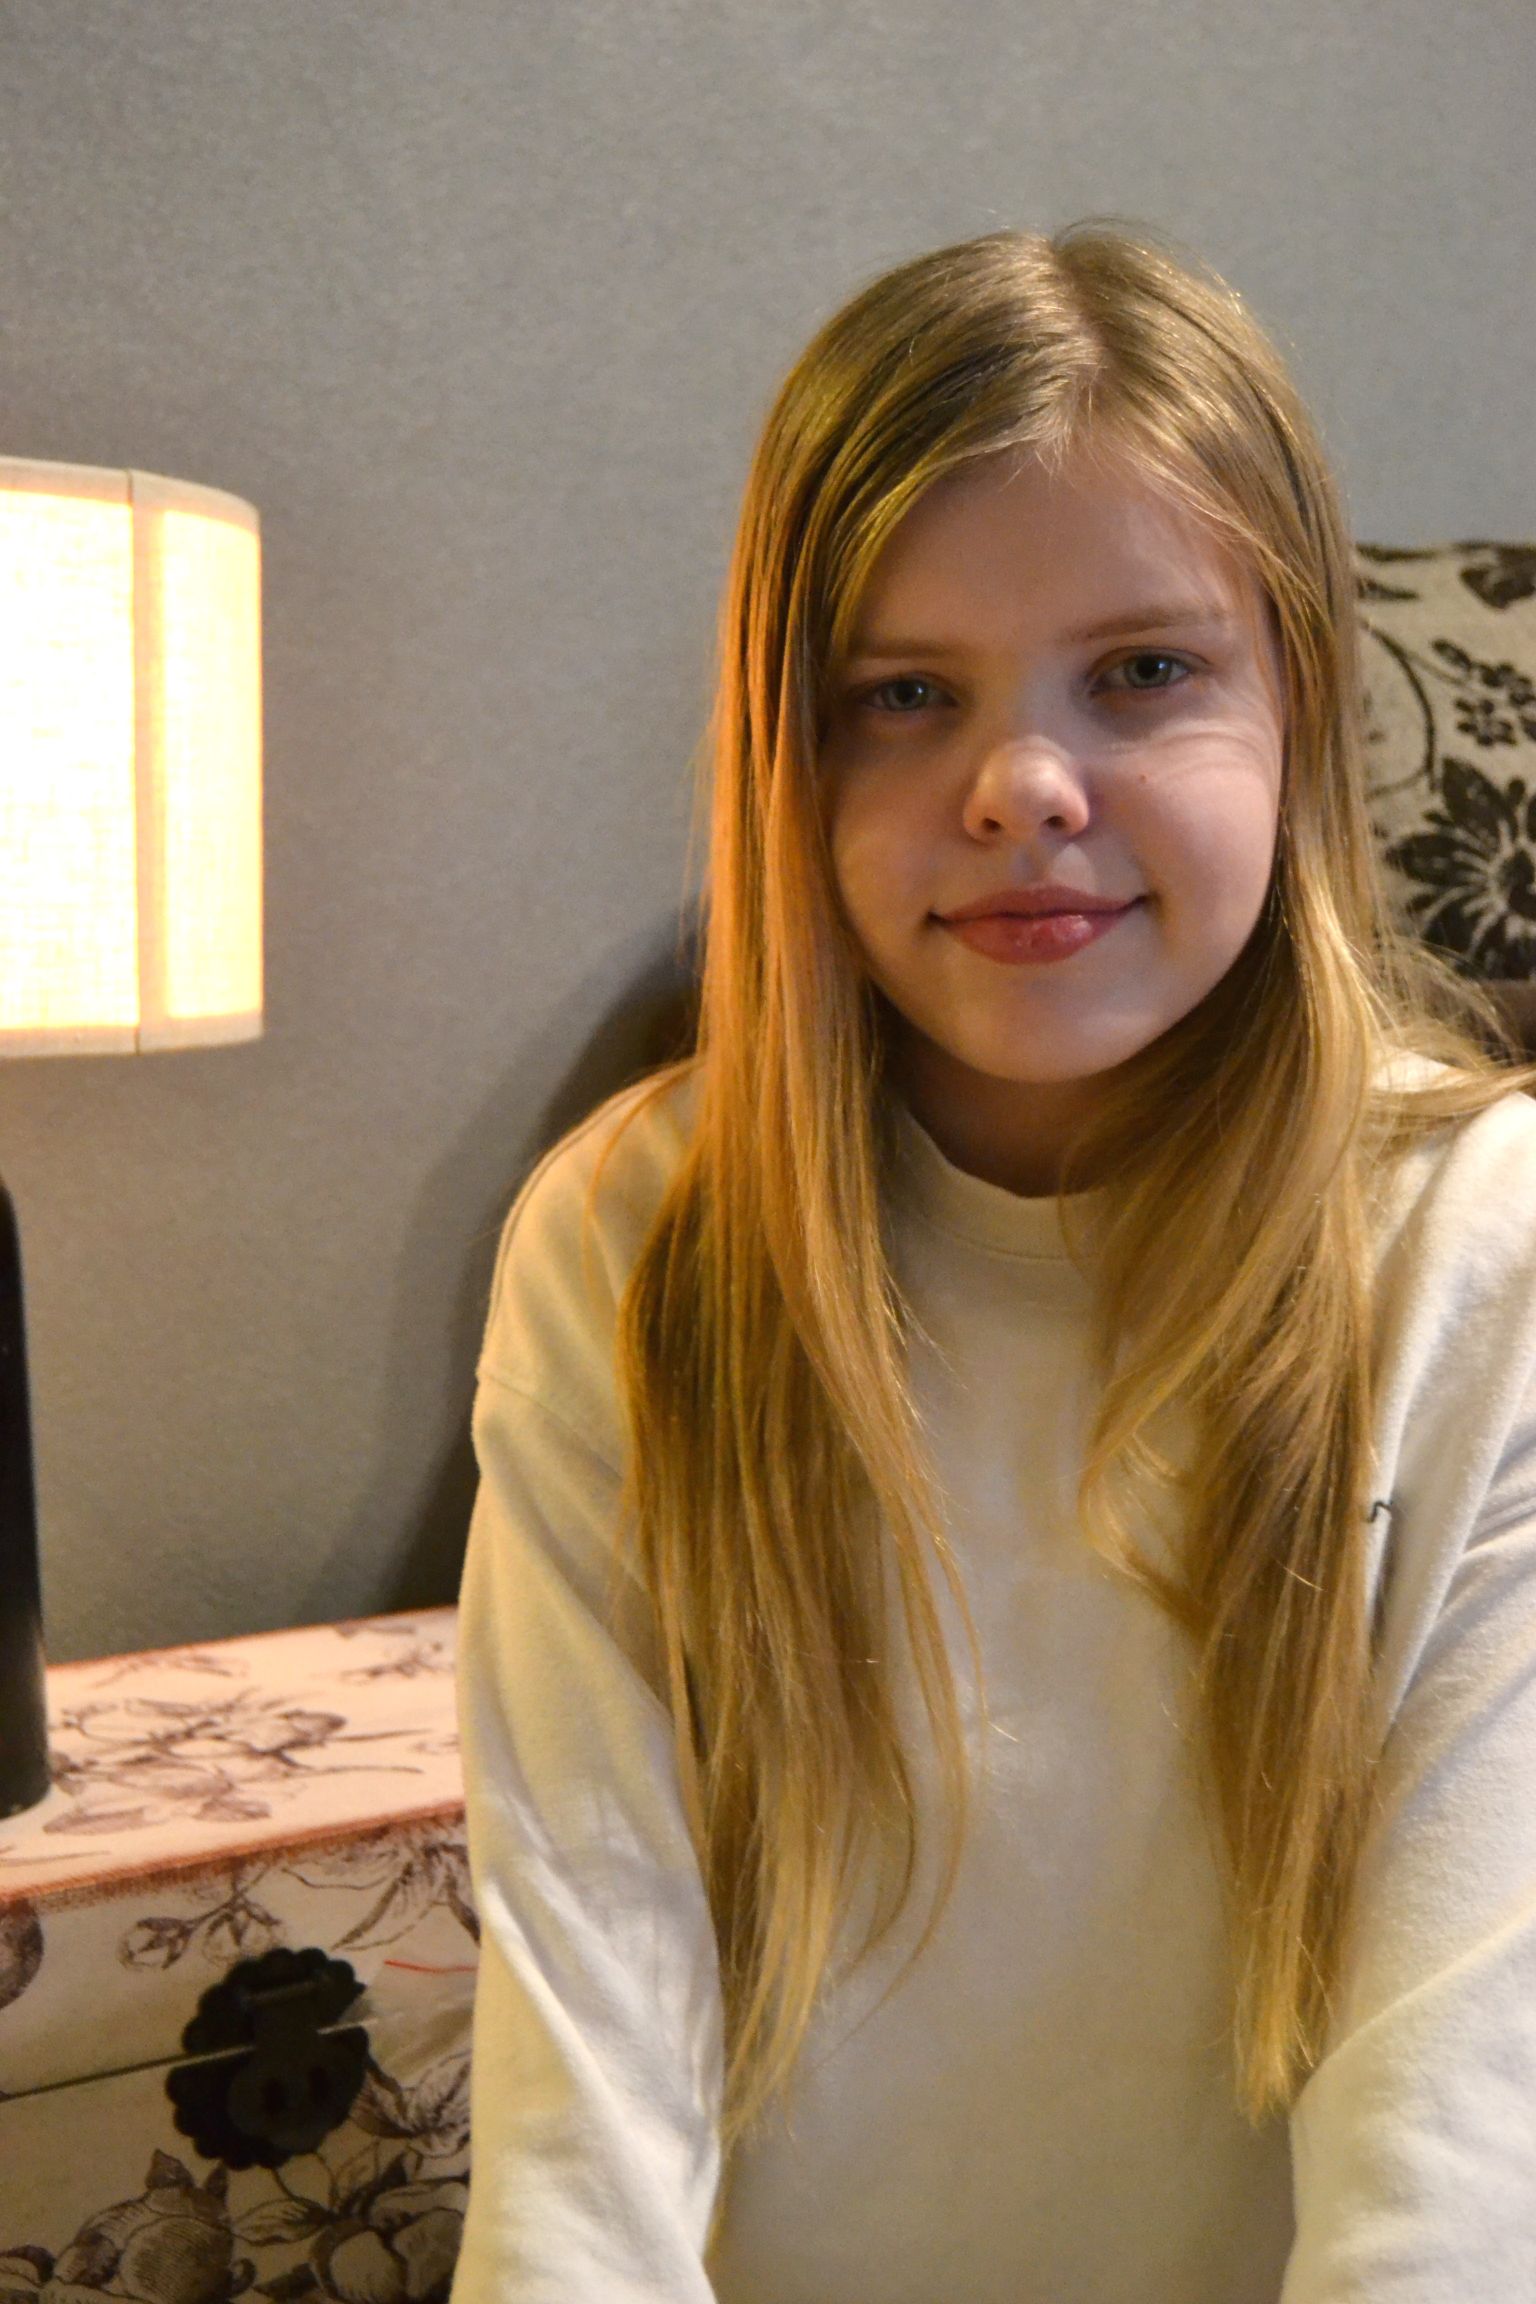 Тойлаская гимназия и молодежное собрание Тойлаской волости решили прийти на помощь Детскому фонду клиники Тартуского университета, чтобы Нора-Лийза, страдающая тяжелым наследственным заболеванием, могла продолжить лечение.